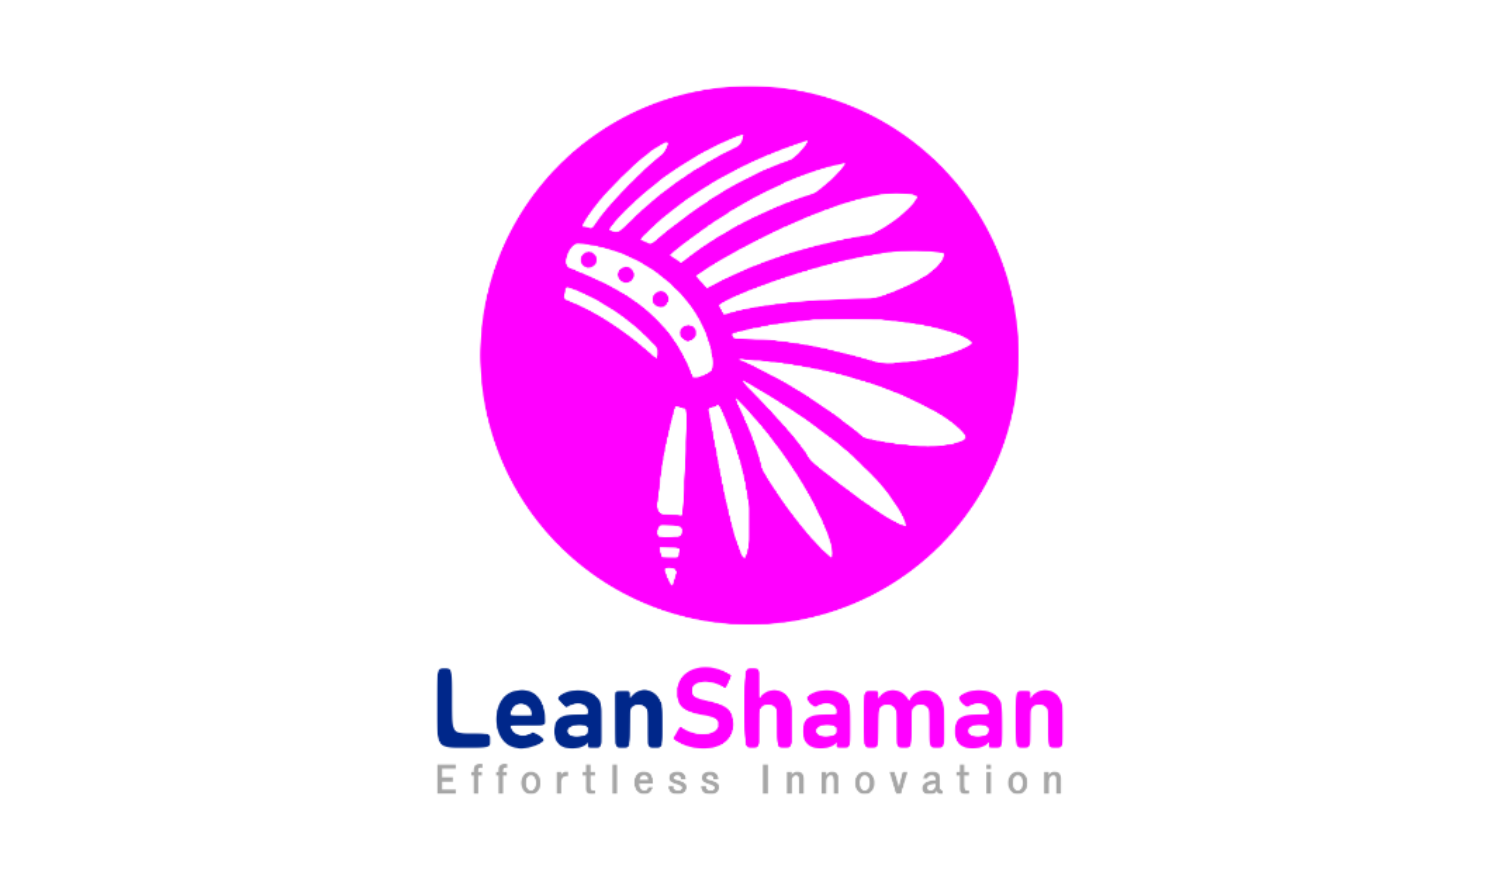 LeanShaman